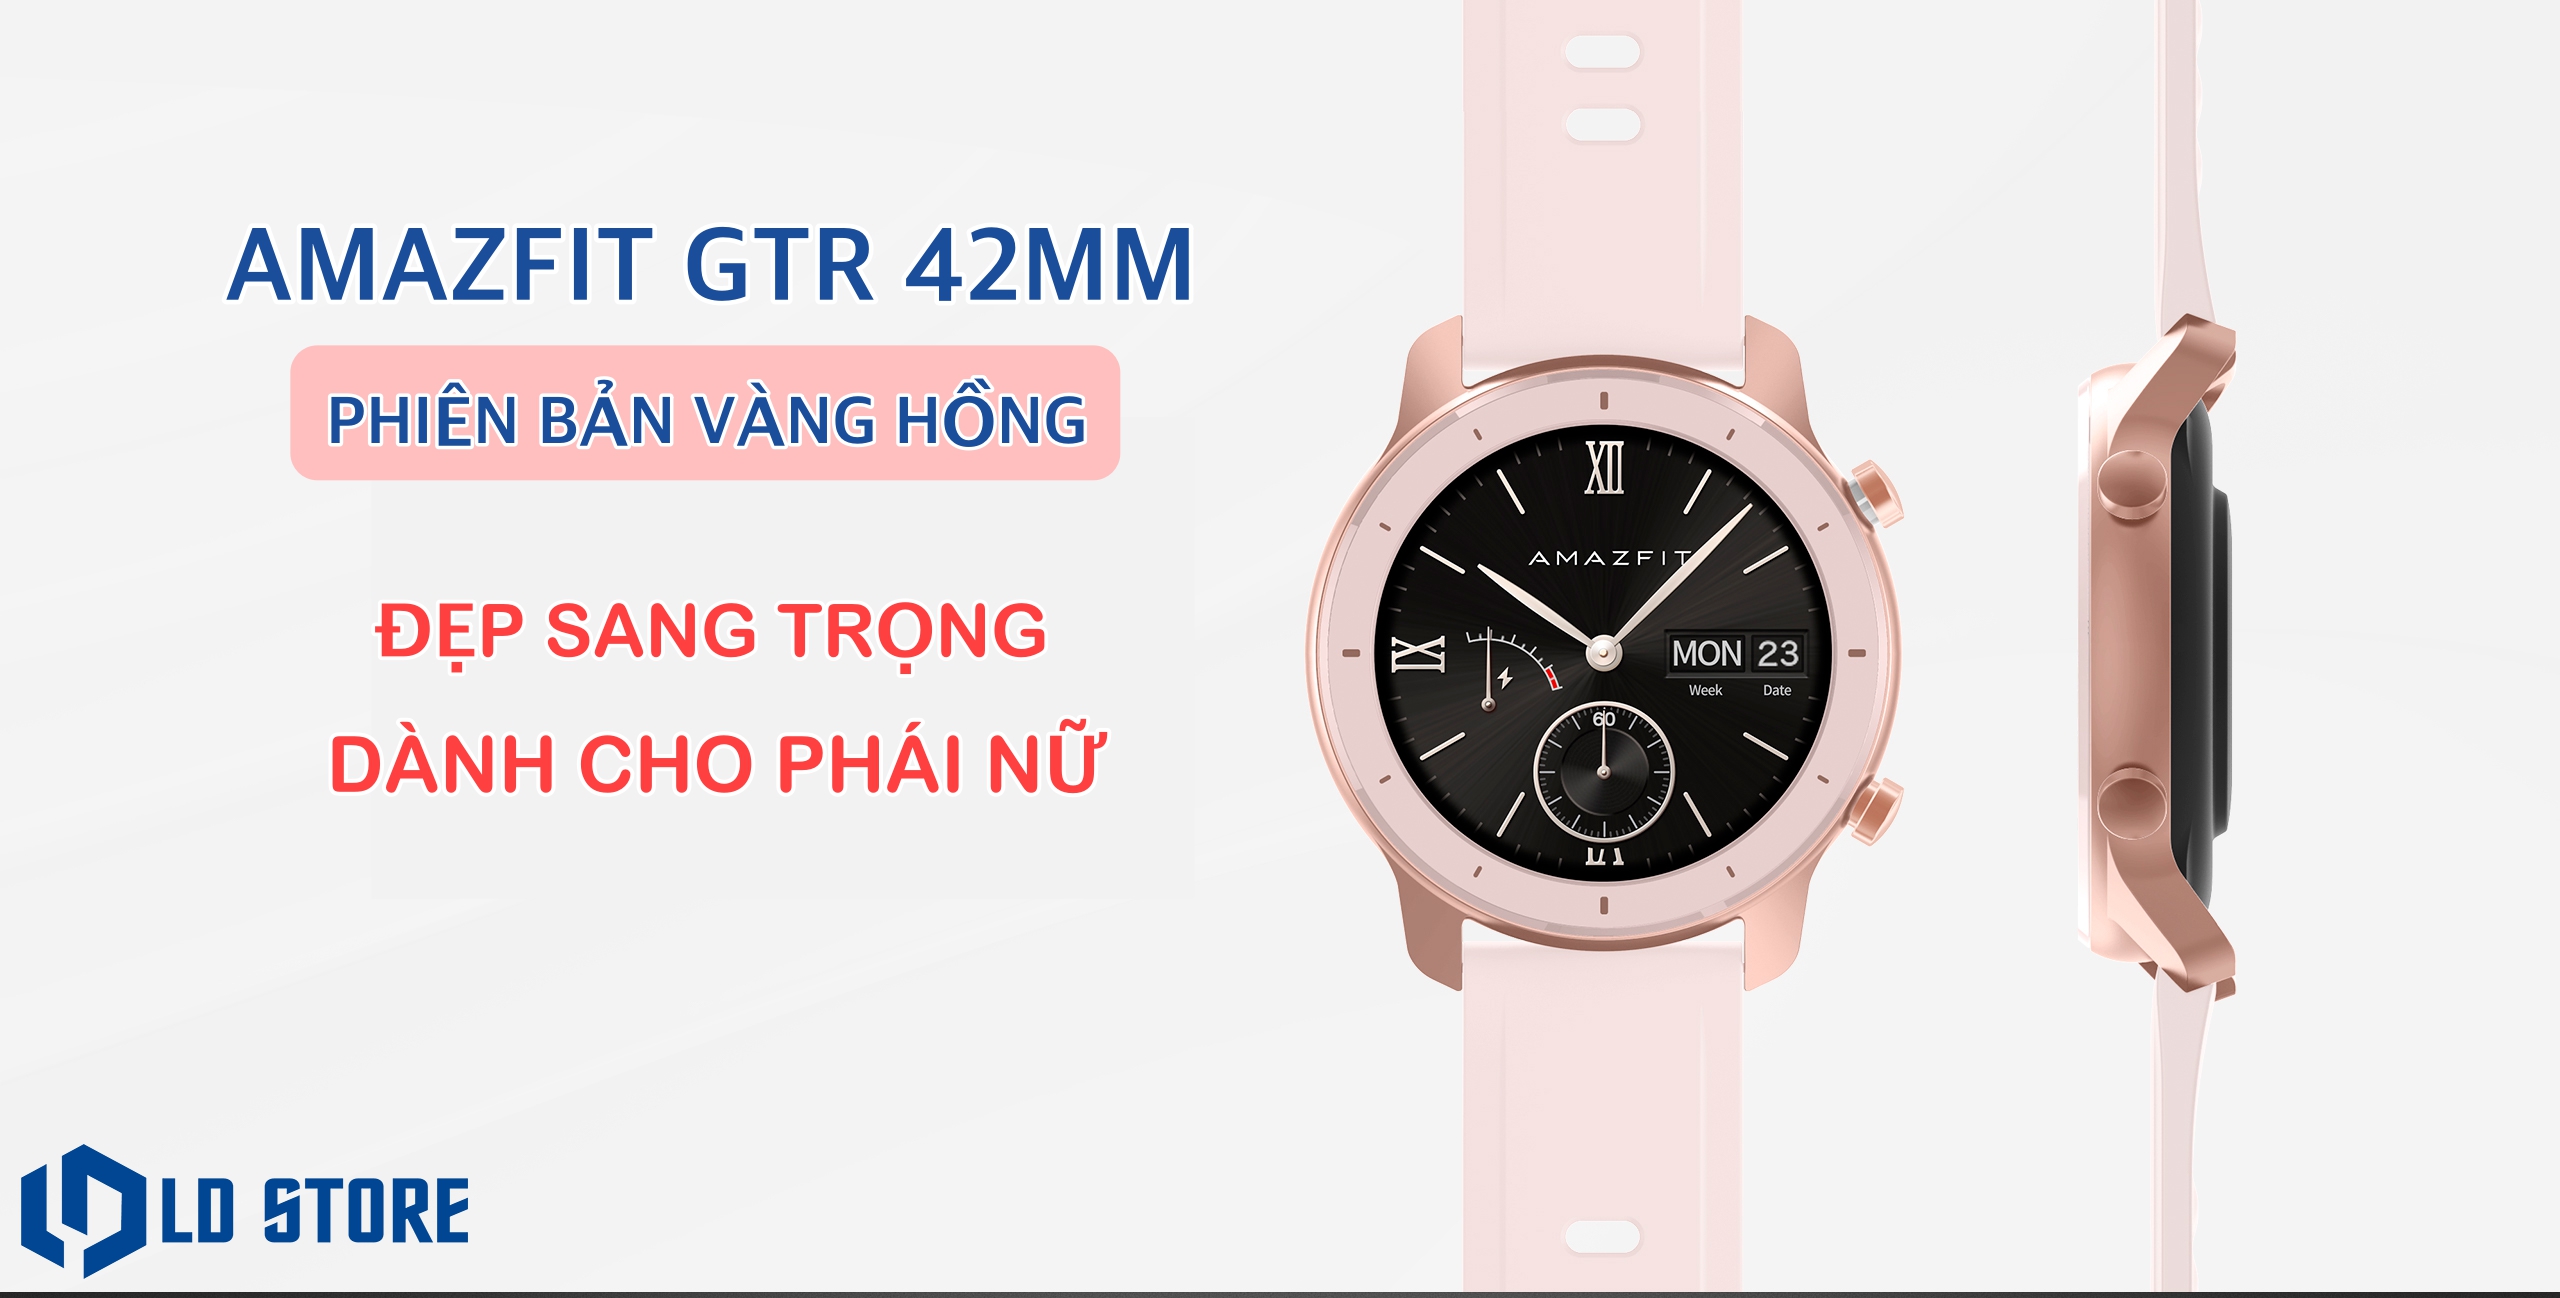 Amazfit GTR - đồng hồ thông minh hoàn hảo cho những ai muốn trải nghiệm font chữ Việt Nam. Thiết kế đẹp mắt, tính năng đa dạng và hiệu suất hoạt động tốt là những điểm mạnh của sản phẩm này. Hãy truy cập vào hình ảnh liên quan và khám phá tất cả những tính năng tuyệt vời mà Amazfit GTR mang lại cho người dùng!